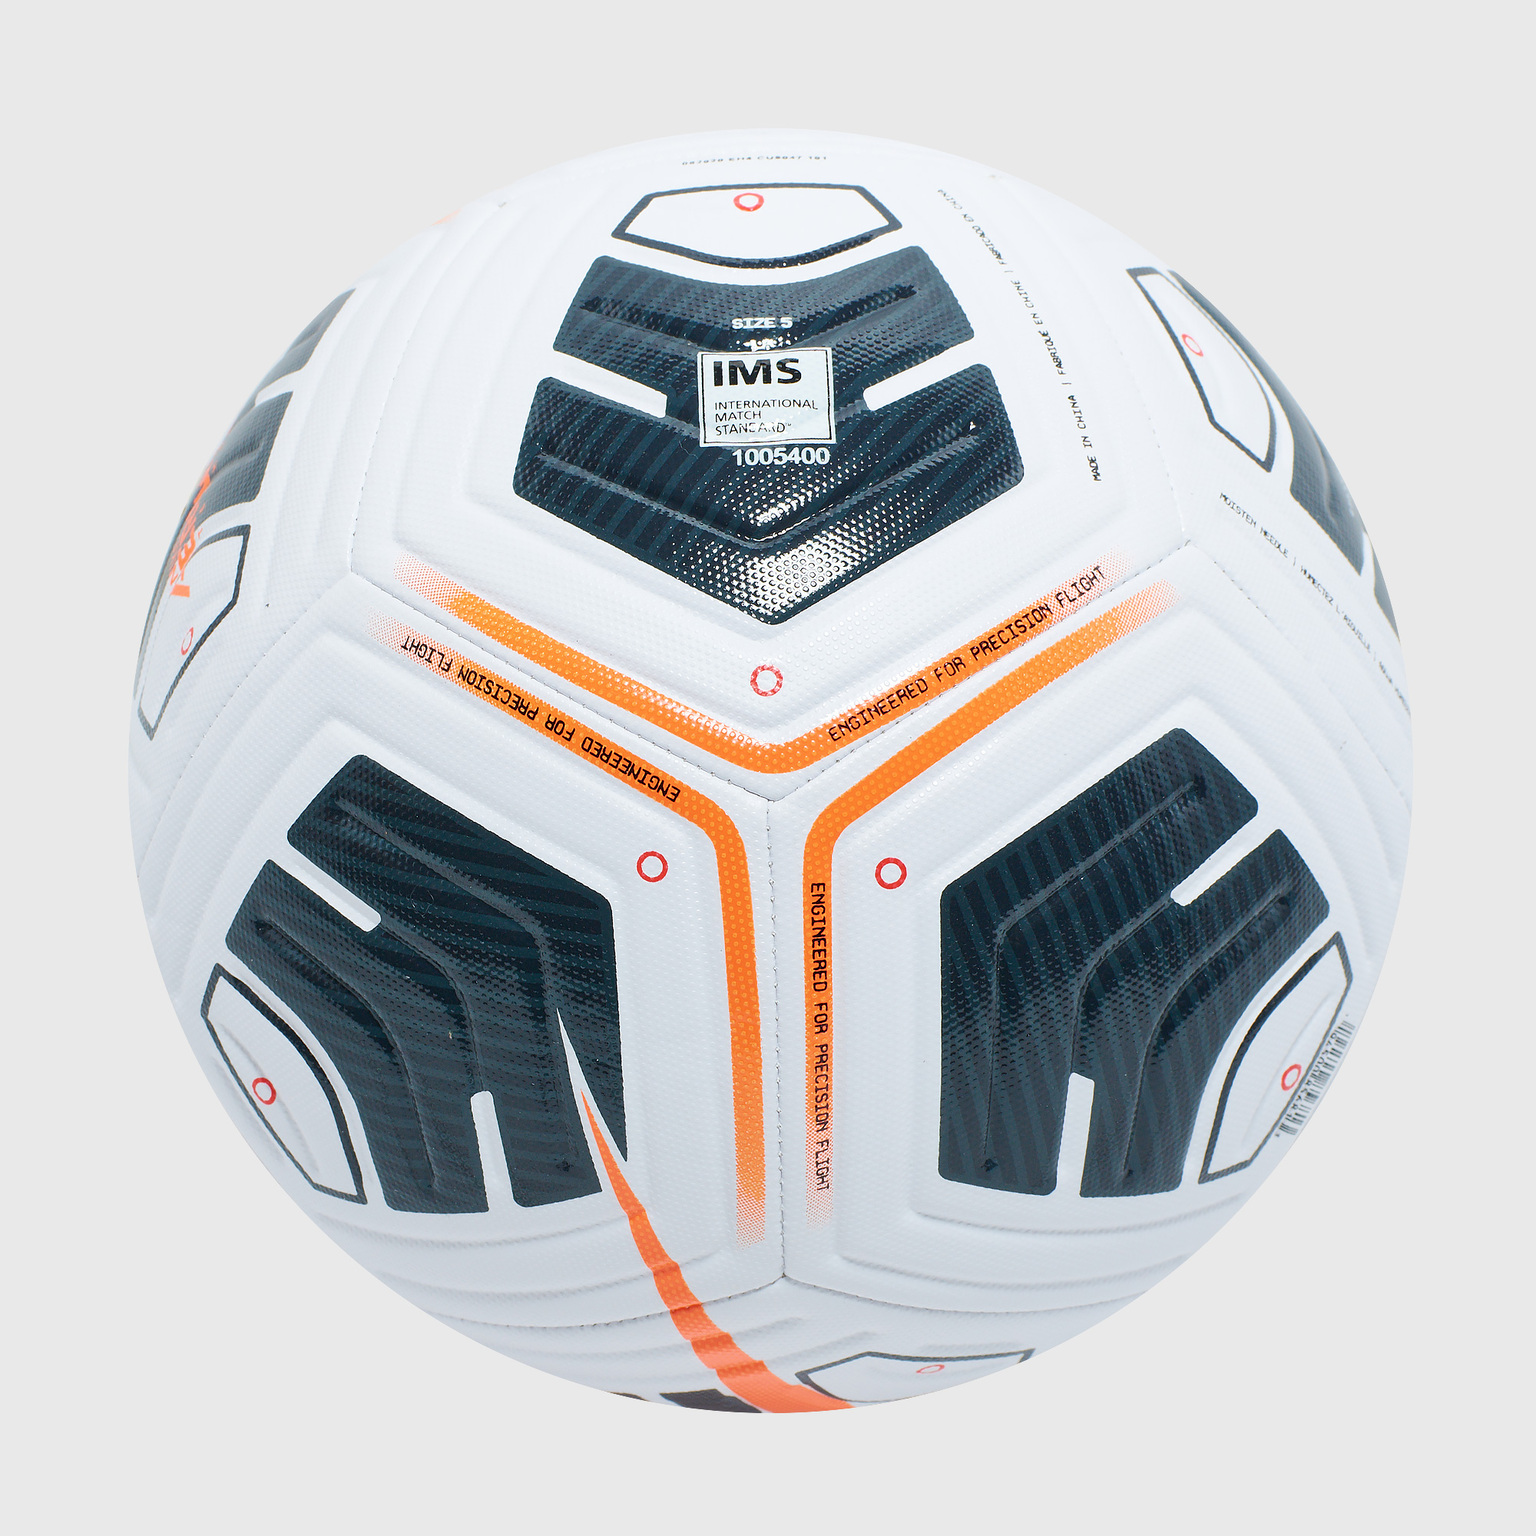 Футбольный мяч Nike Academy Team CU8047-101